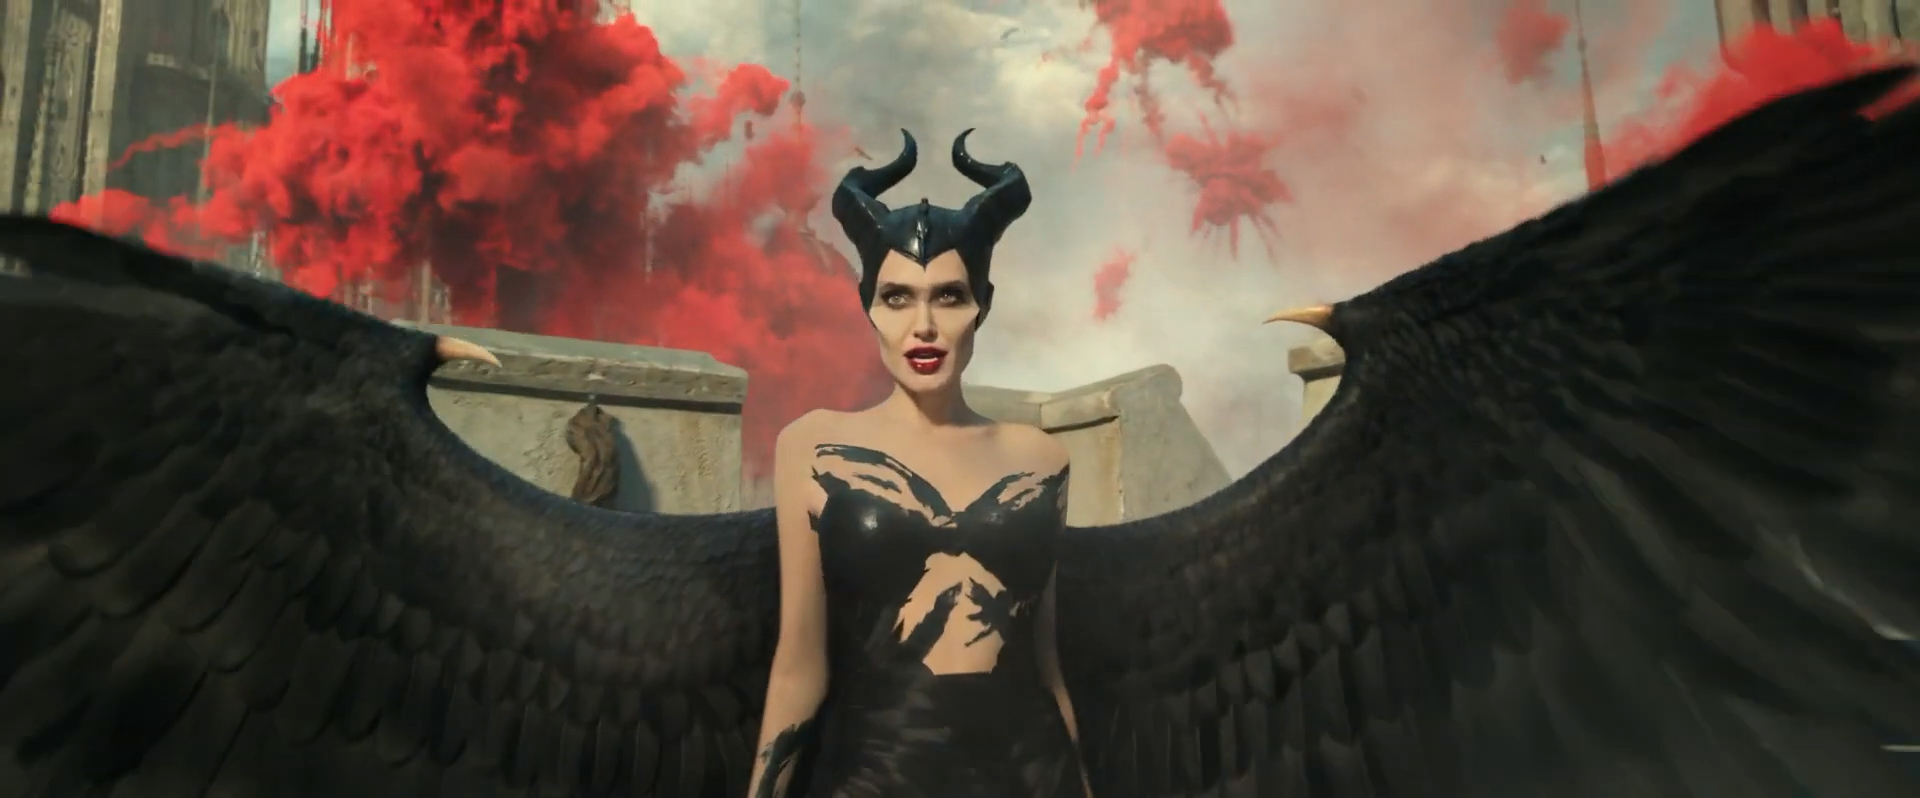 รีวิว Maleficent: Mistress of Evil